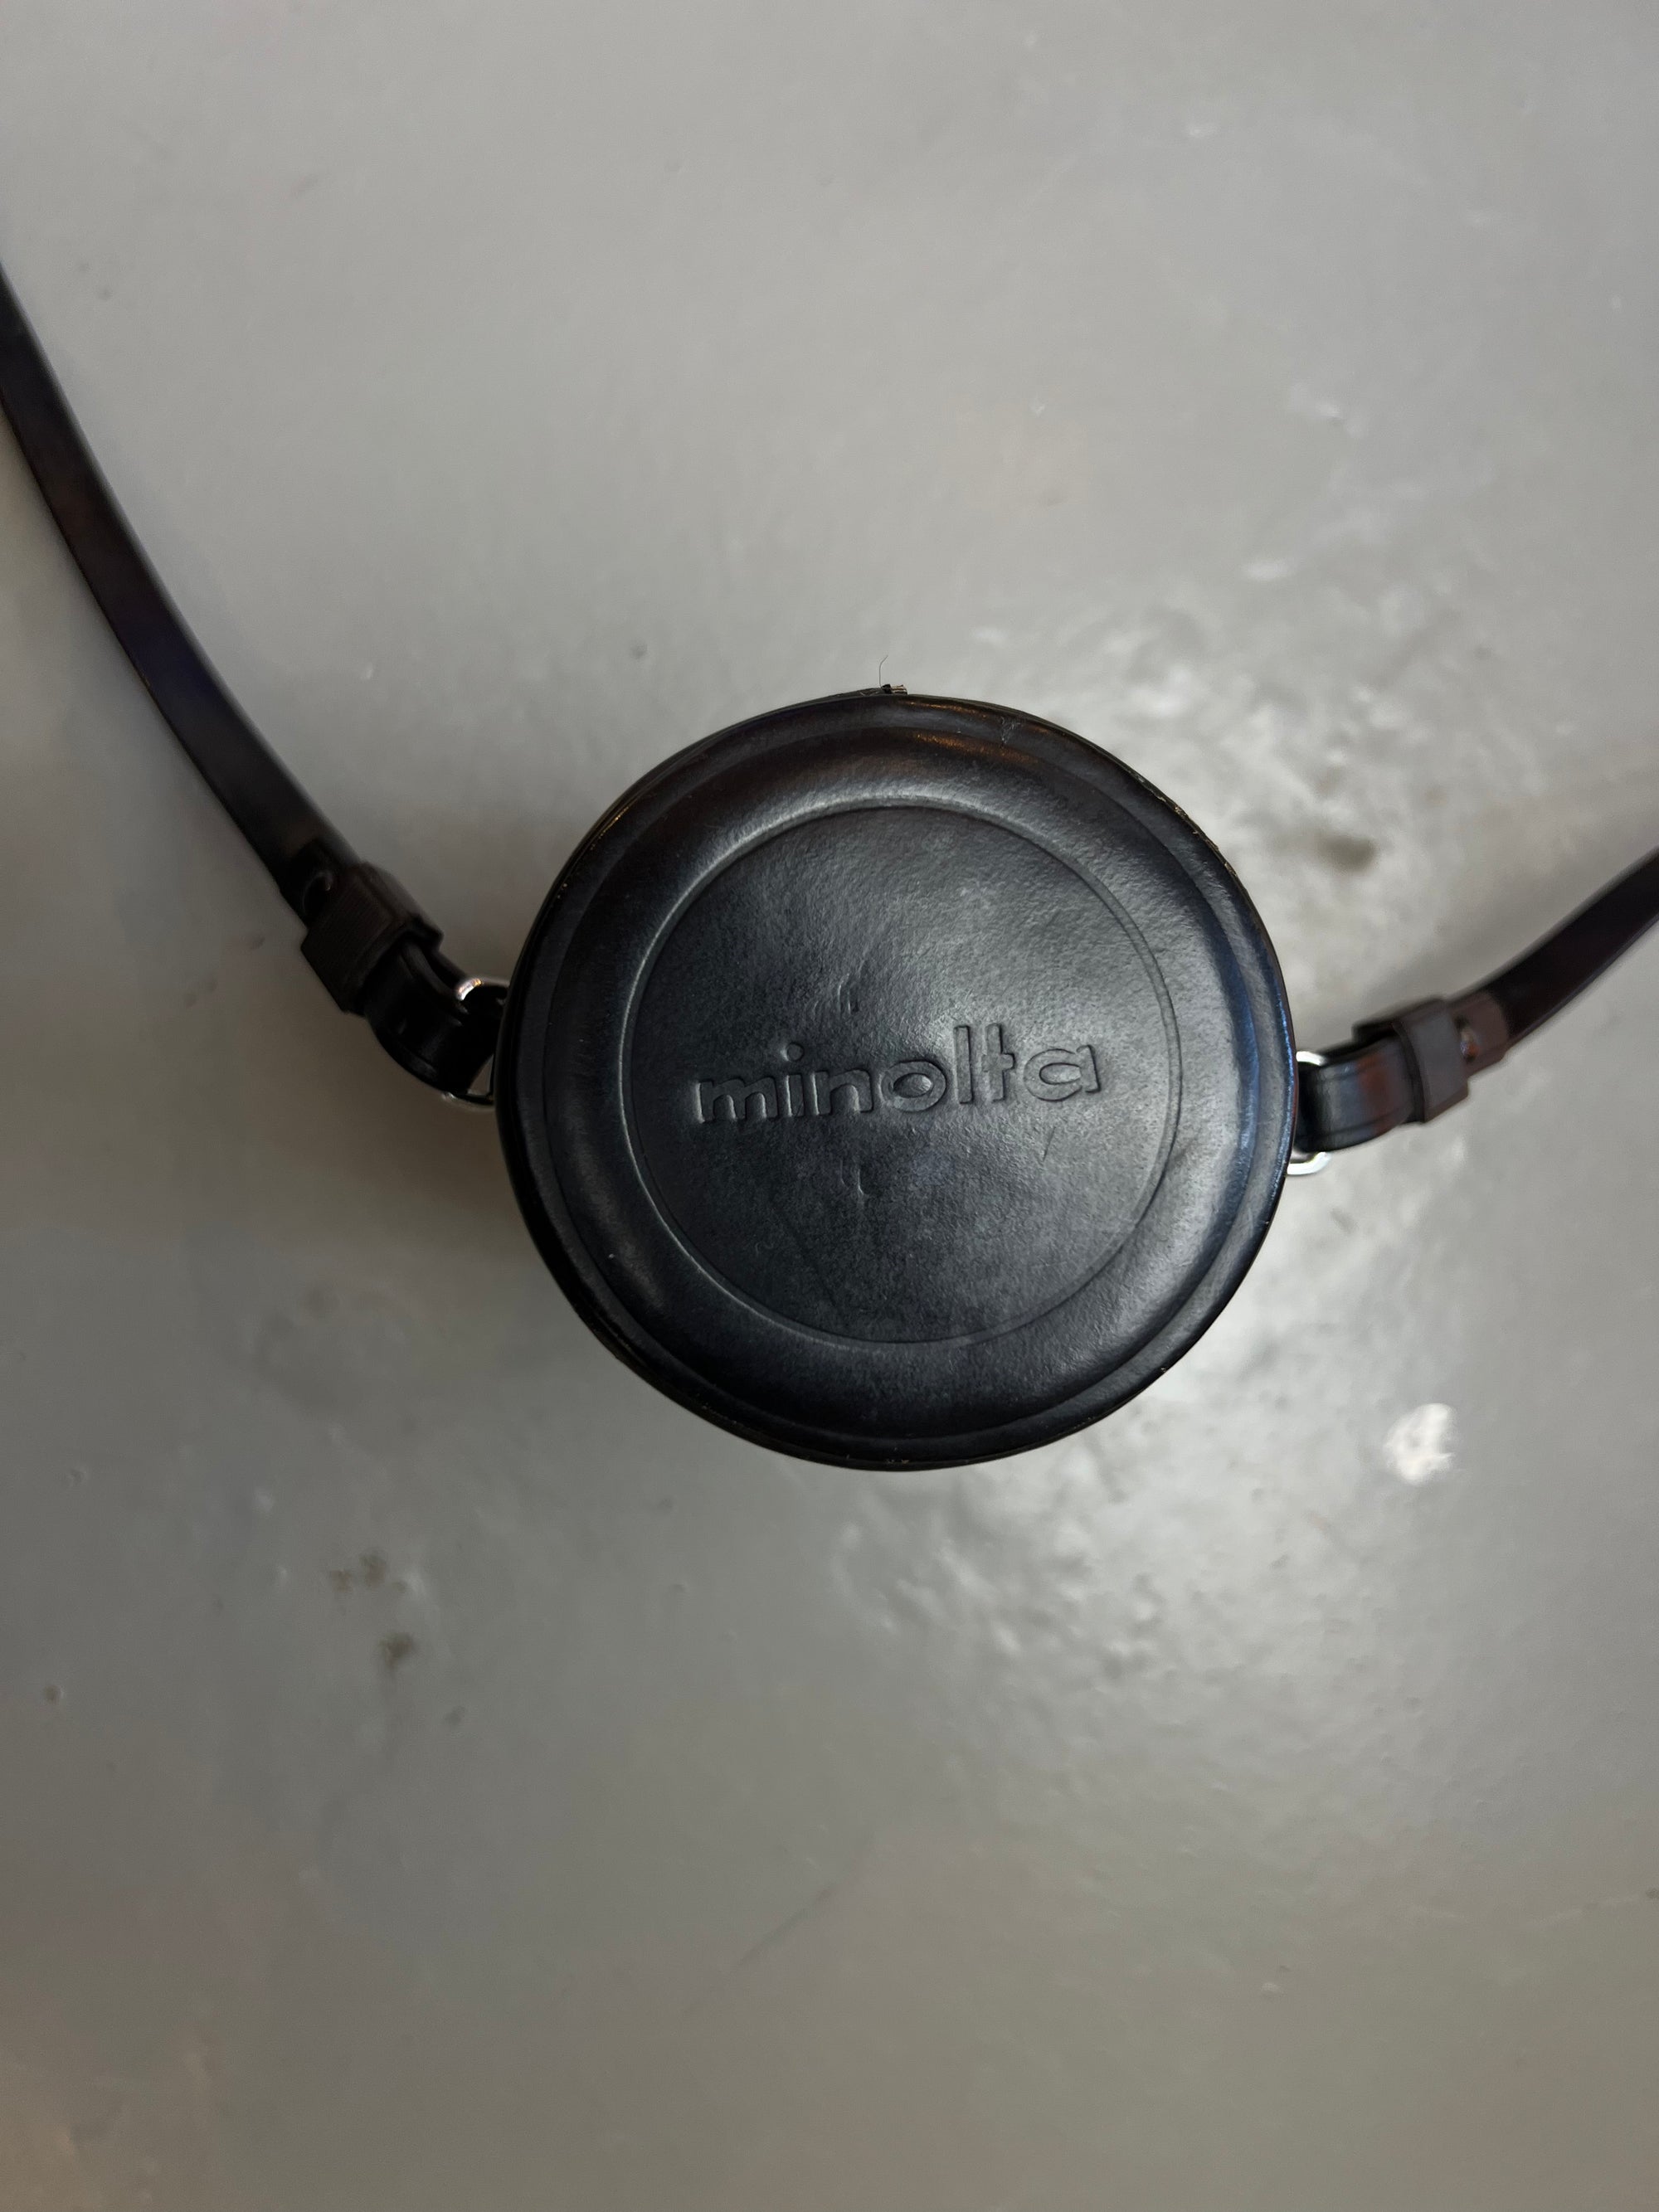 Vintage Minolta Mini Bag